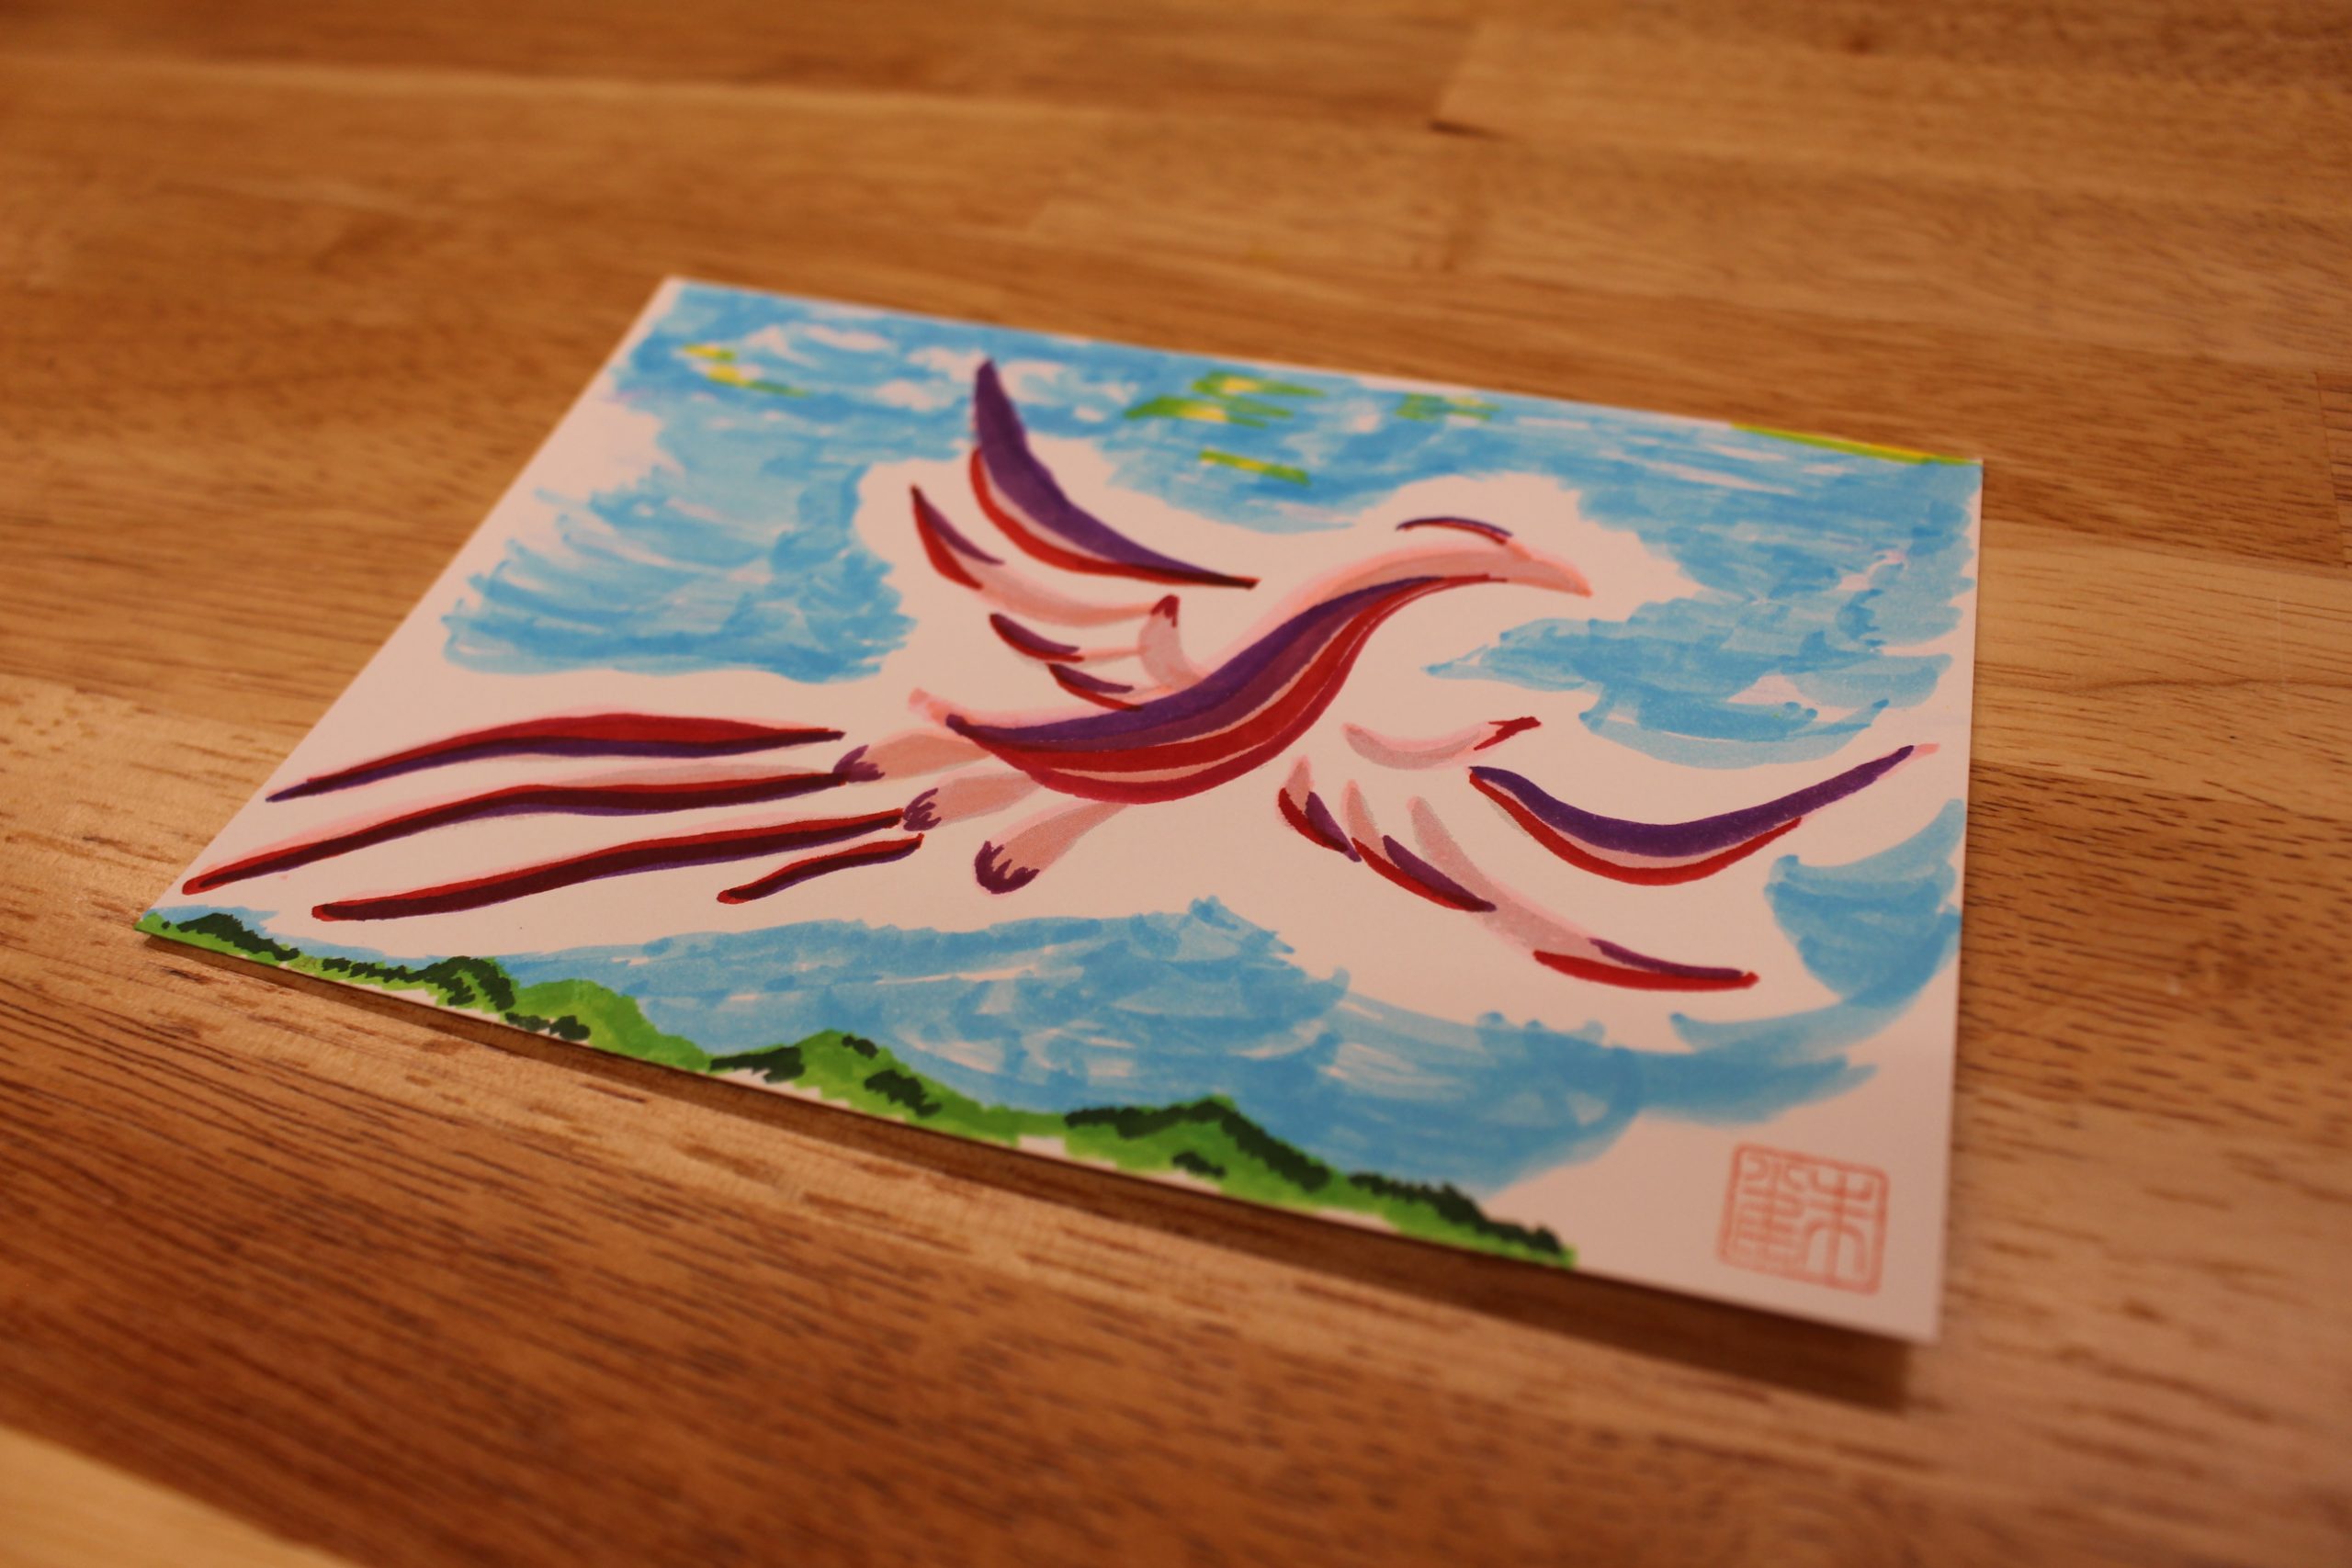 キトラ古墳壁画公開記念 「飛鳥オリジナルポストカードづくり」（1月21日～2月19日）